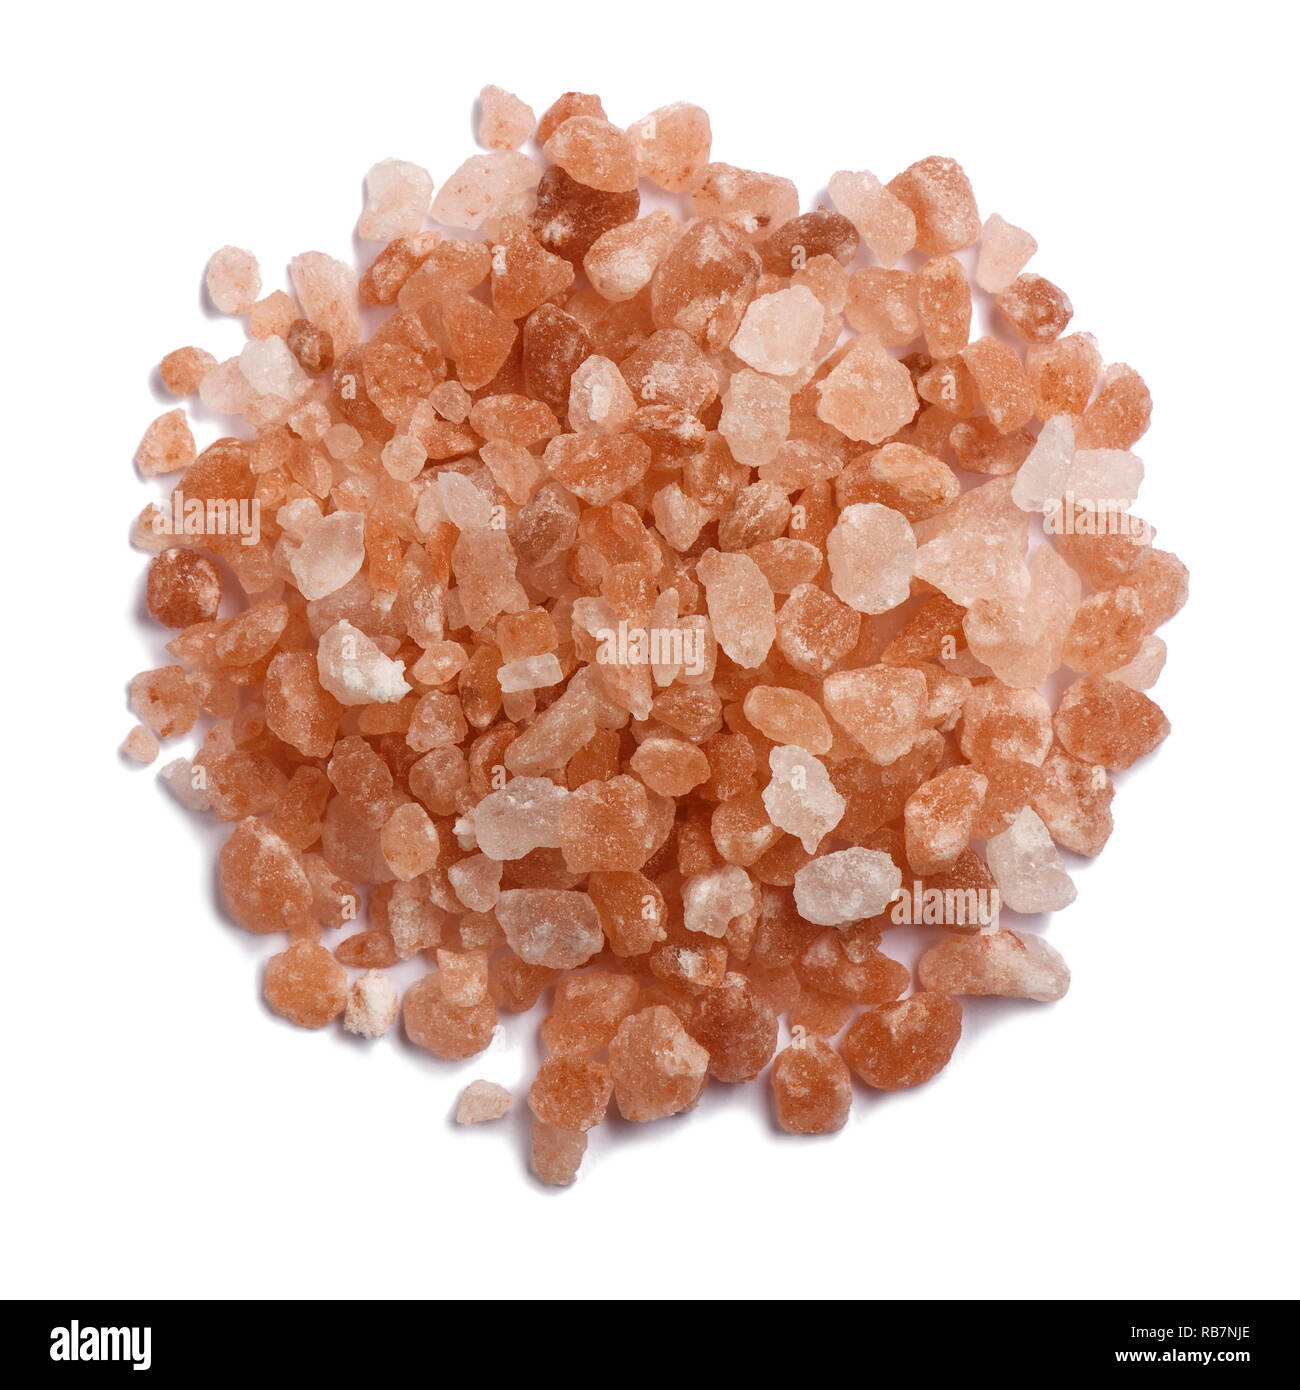 A small pile of Himalayan pink salt granules Stock Photo